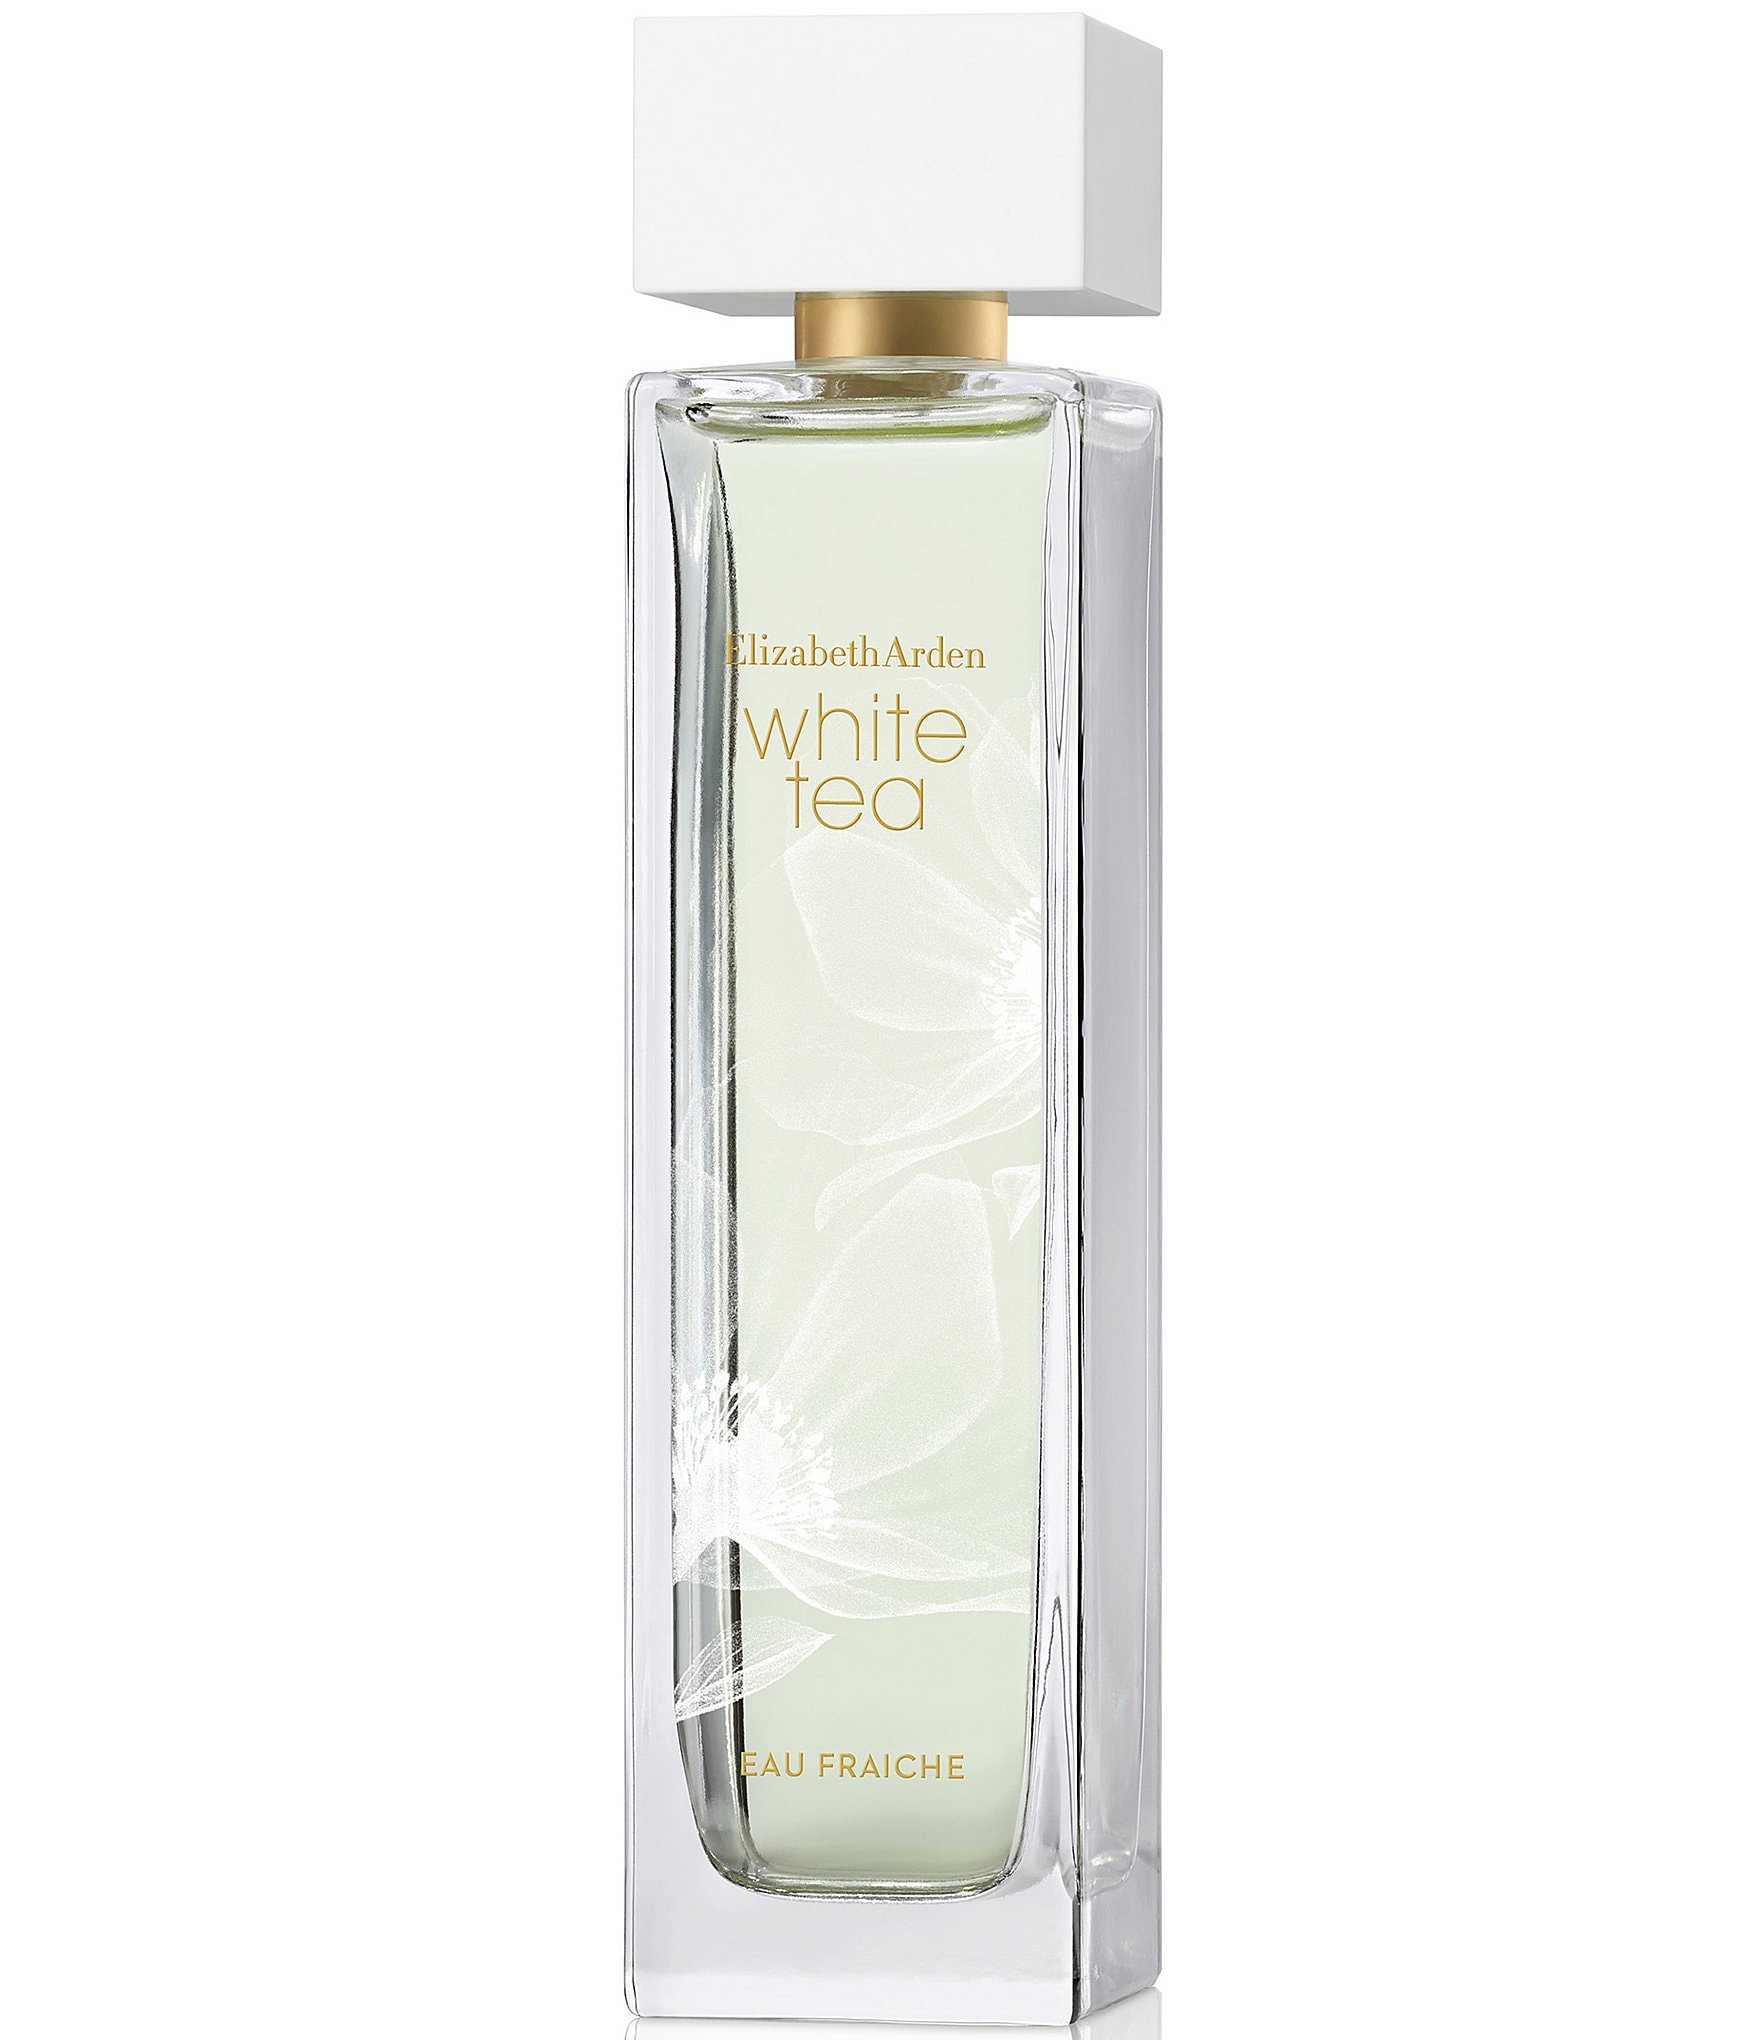 white: Fragrance, Perfume, & Cologne for Women & Men